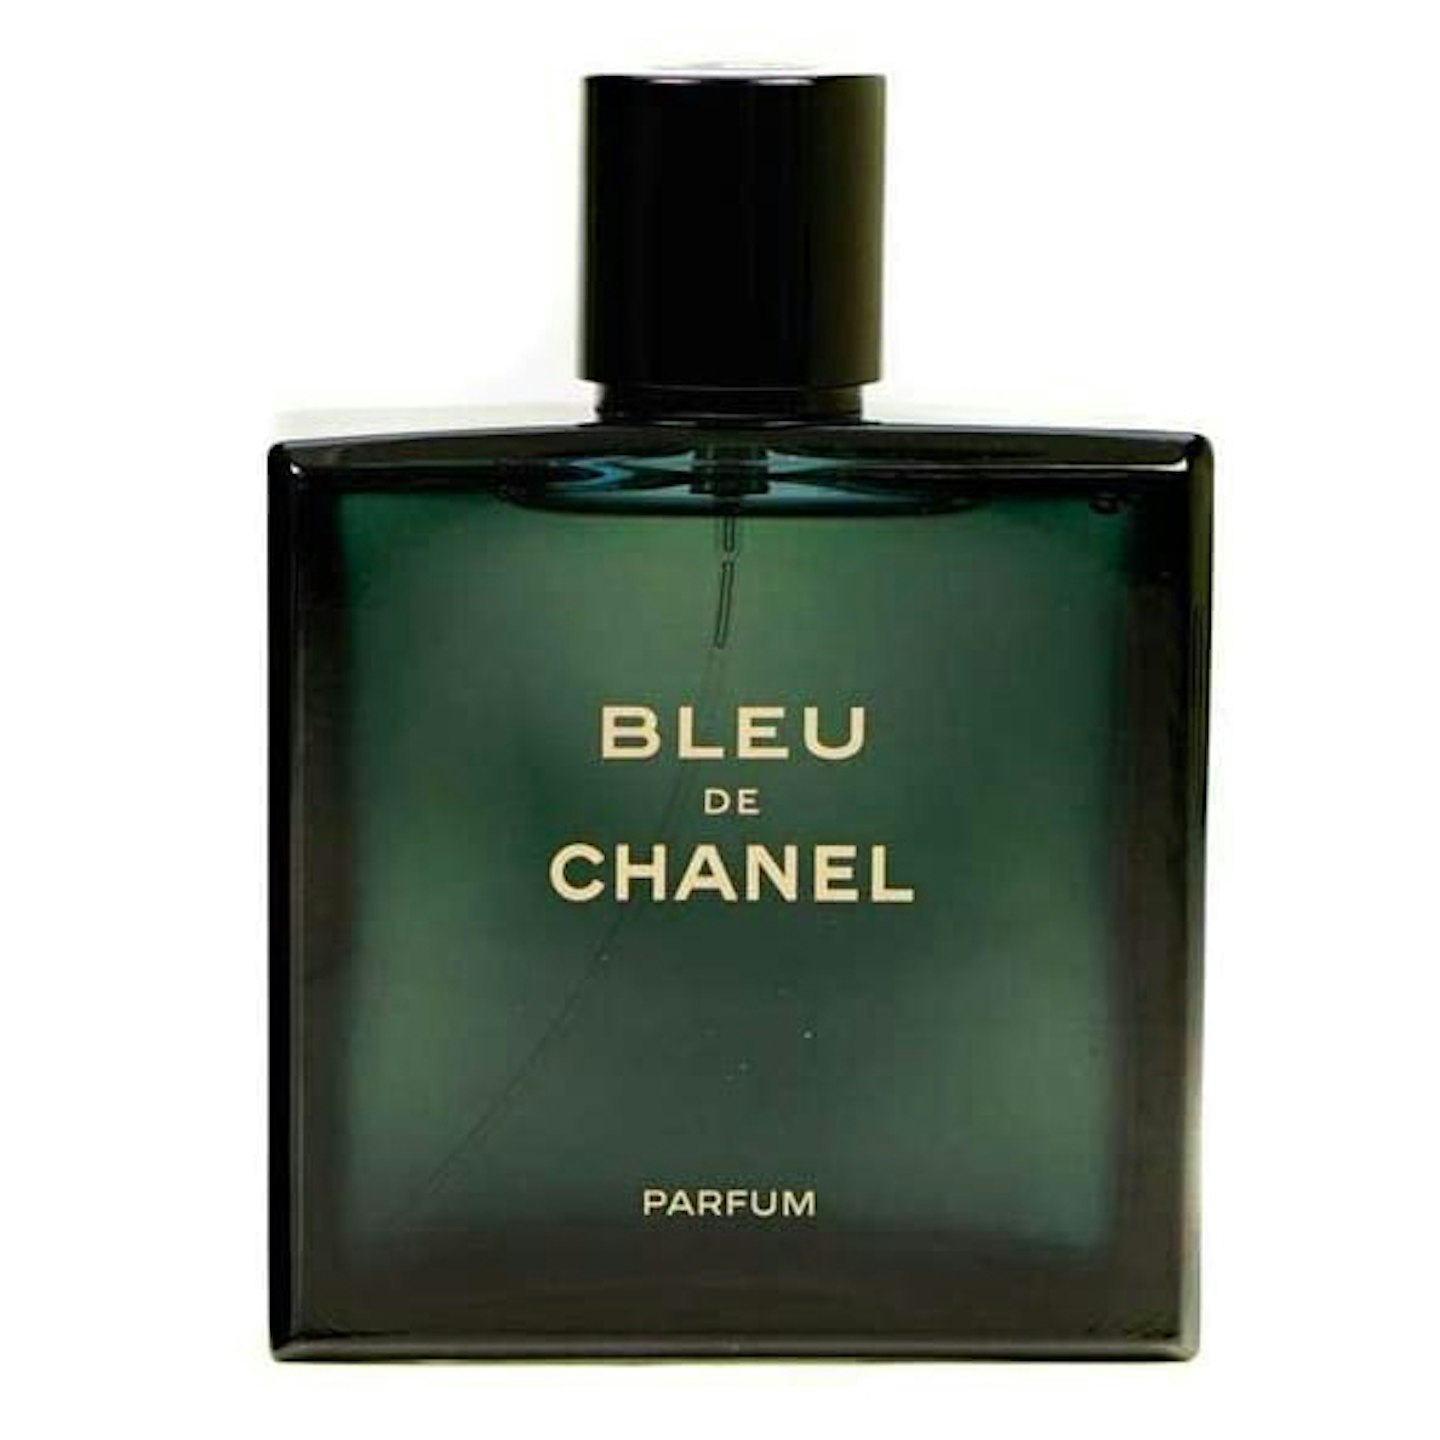 Chanel - Bleu de Chanel (Parfum)